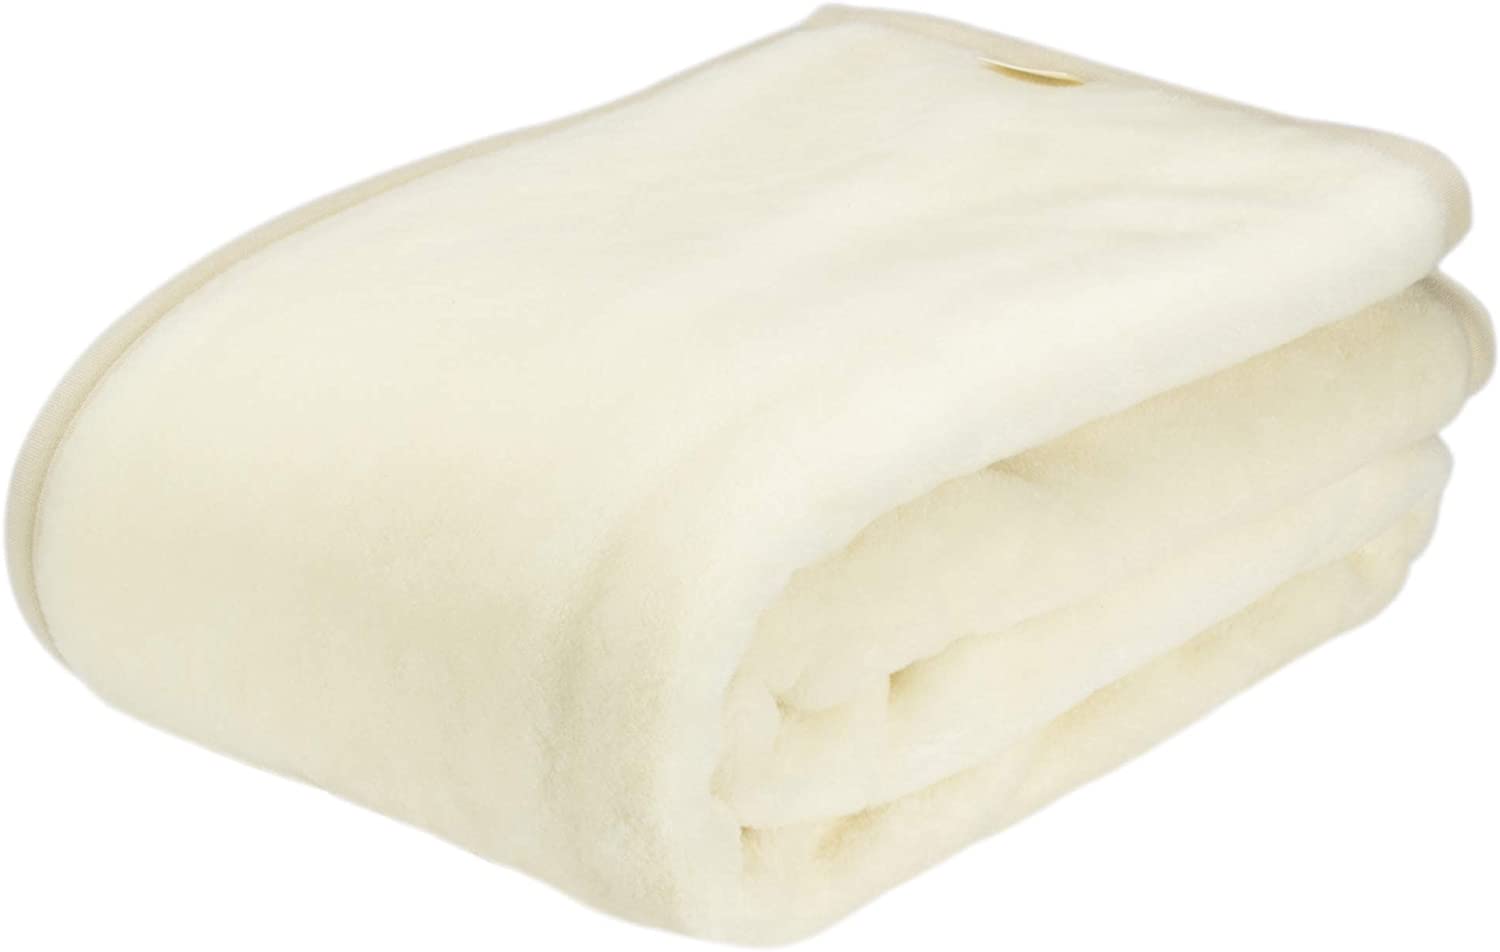 西川 ウール毛布 シングル 洗える ウール100% 日本製 